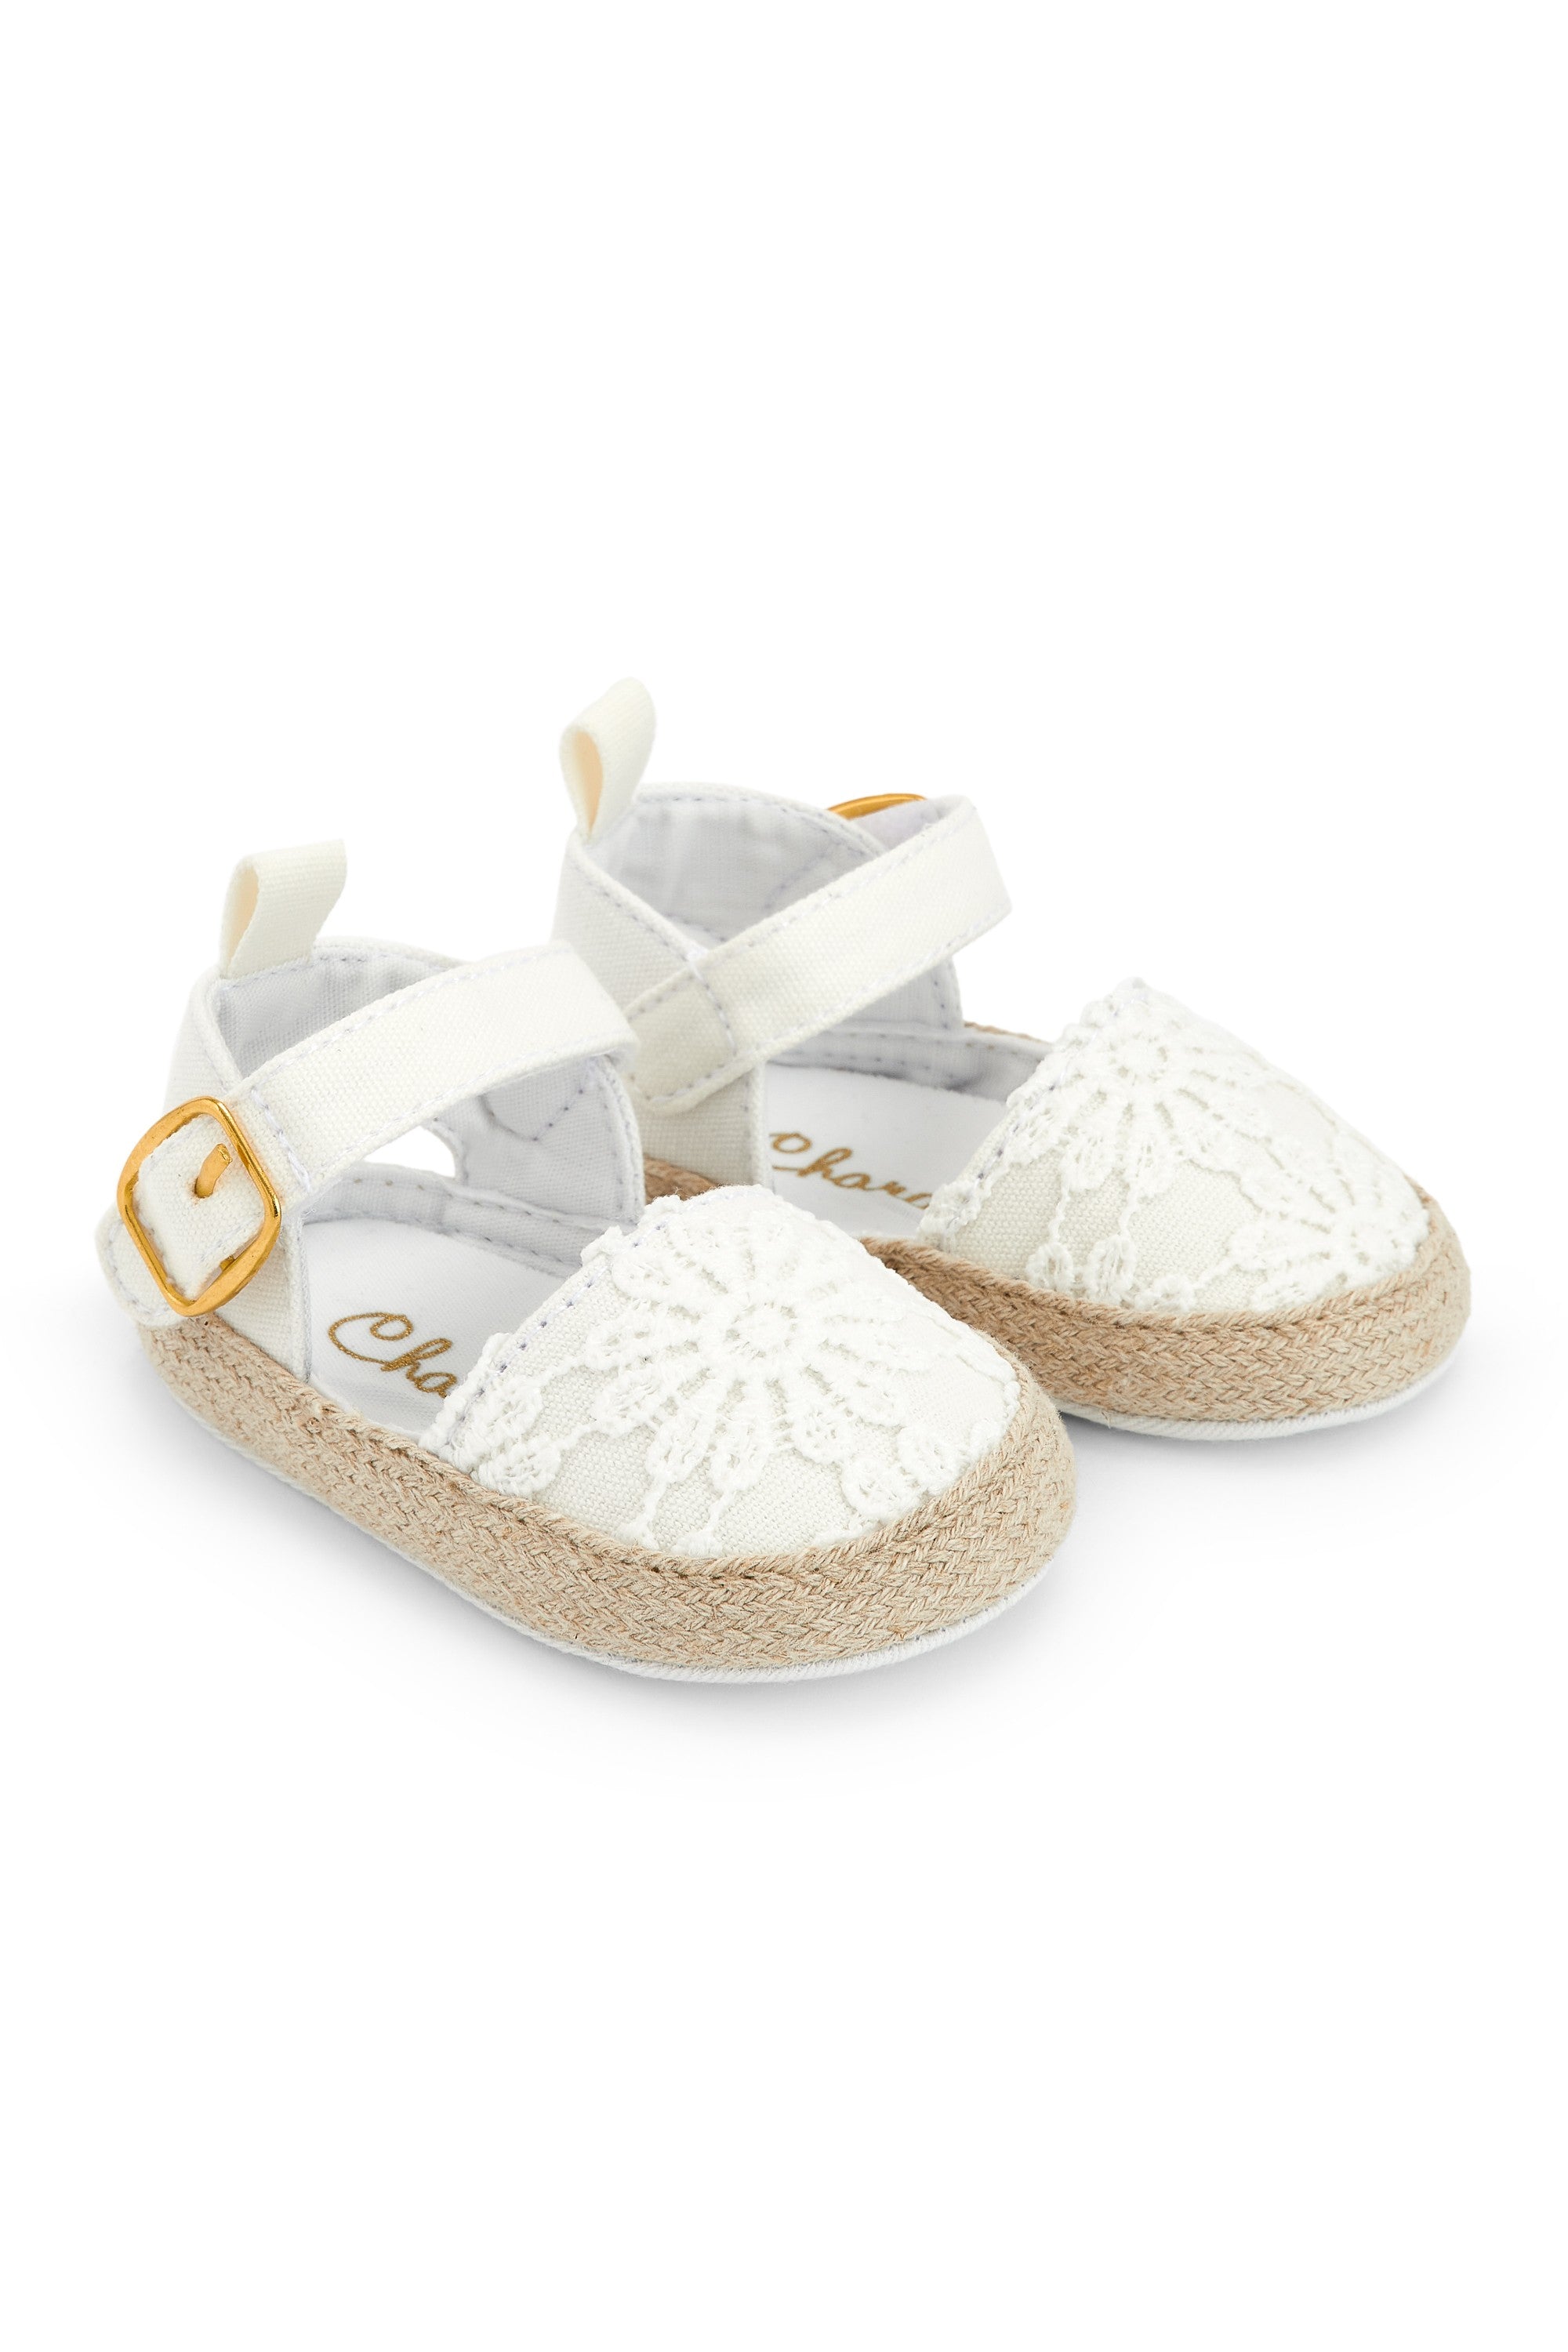 Zapatos de recién nacido crudo VERANO/Outlet